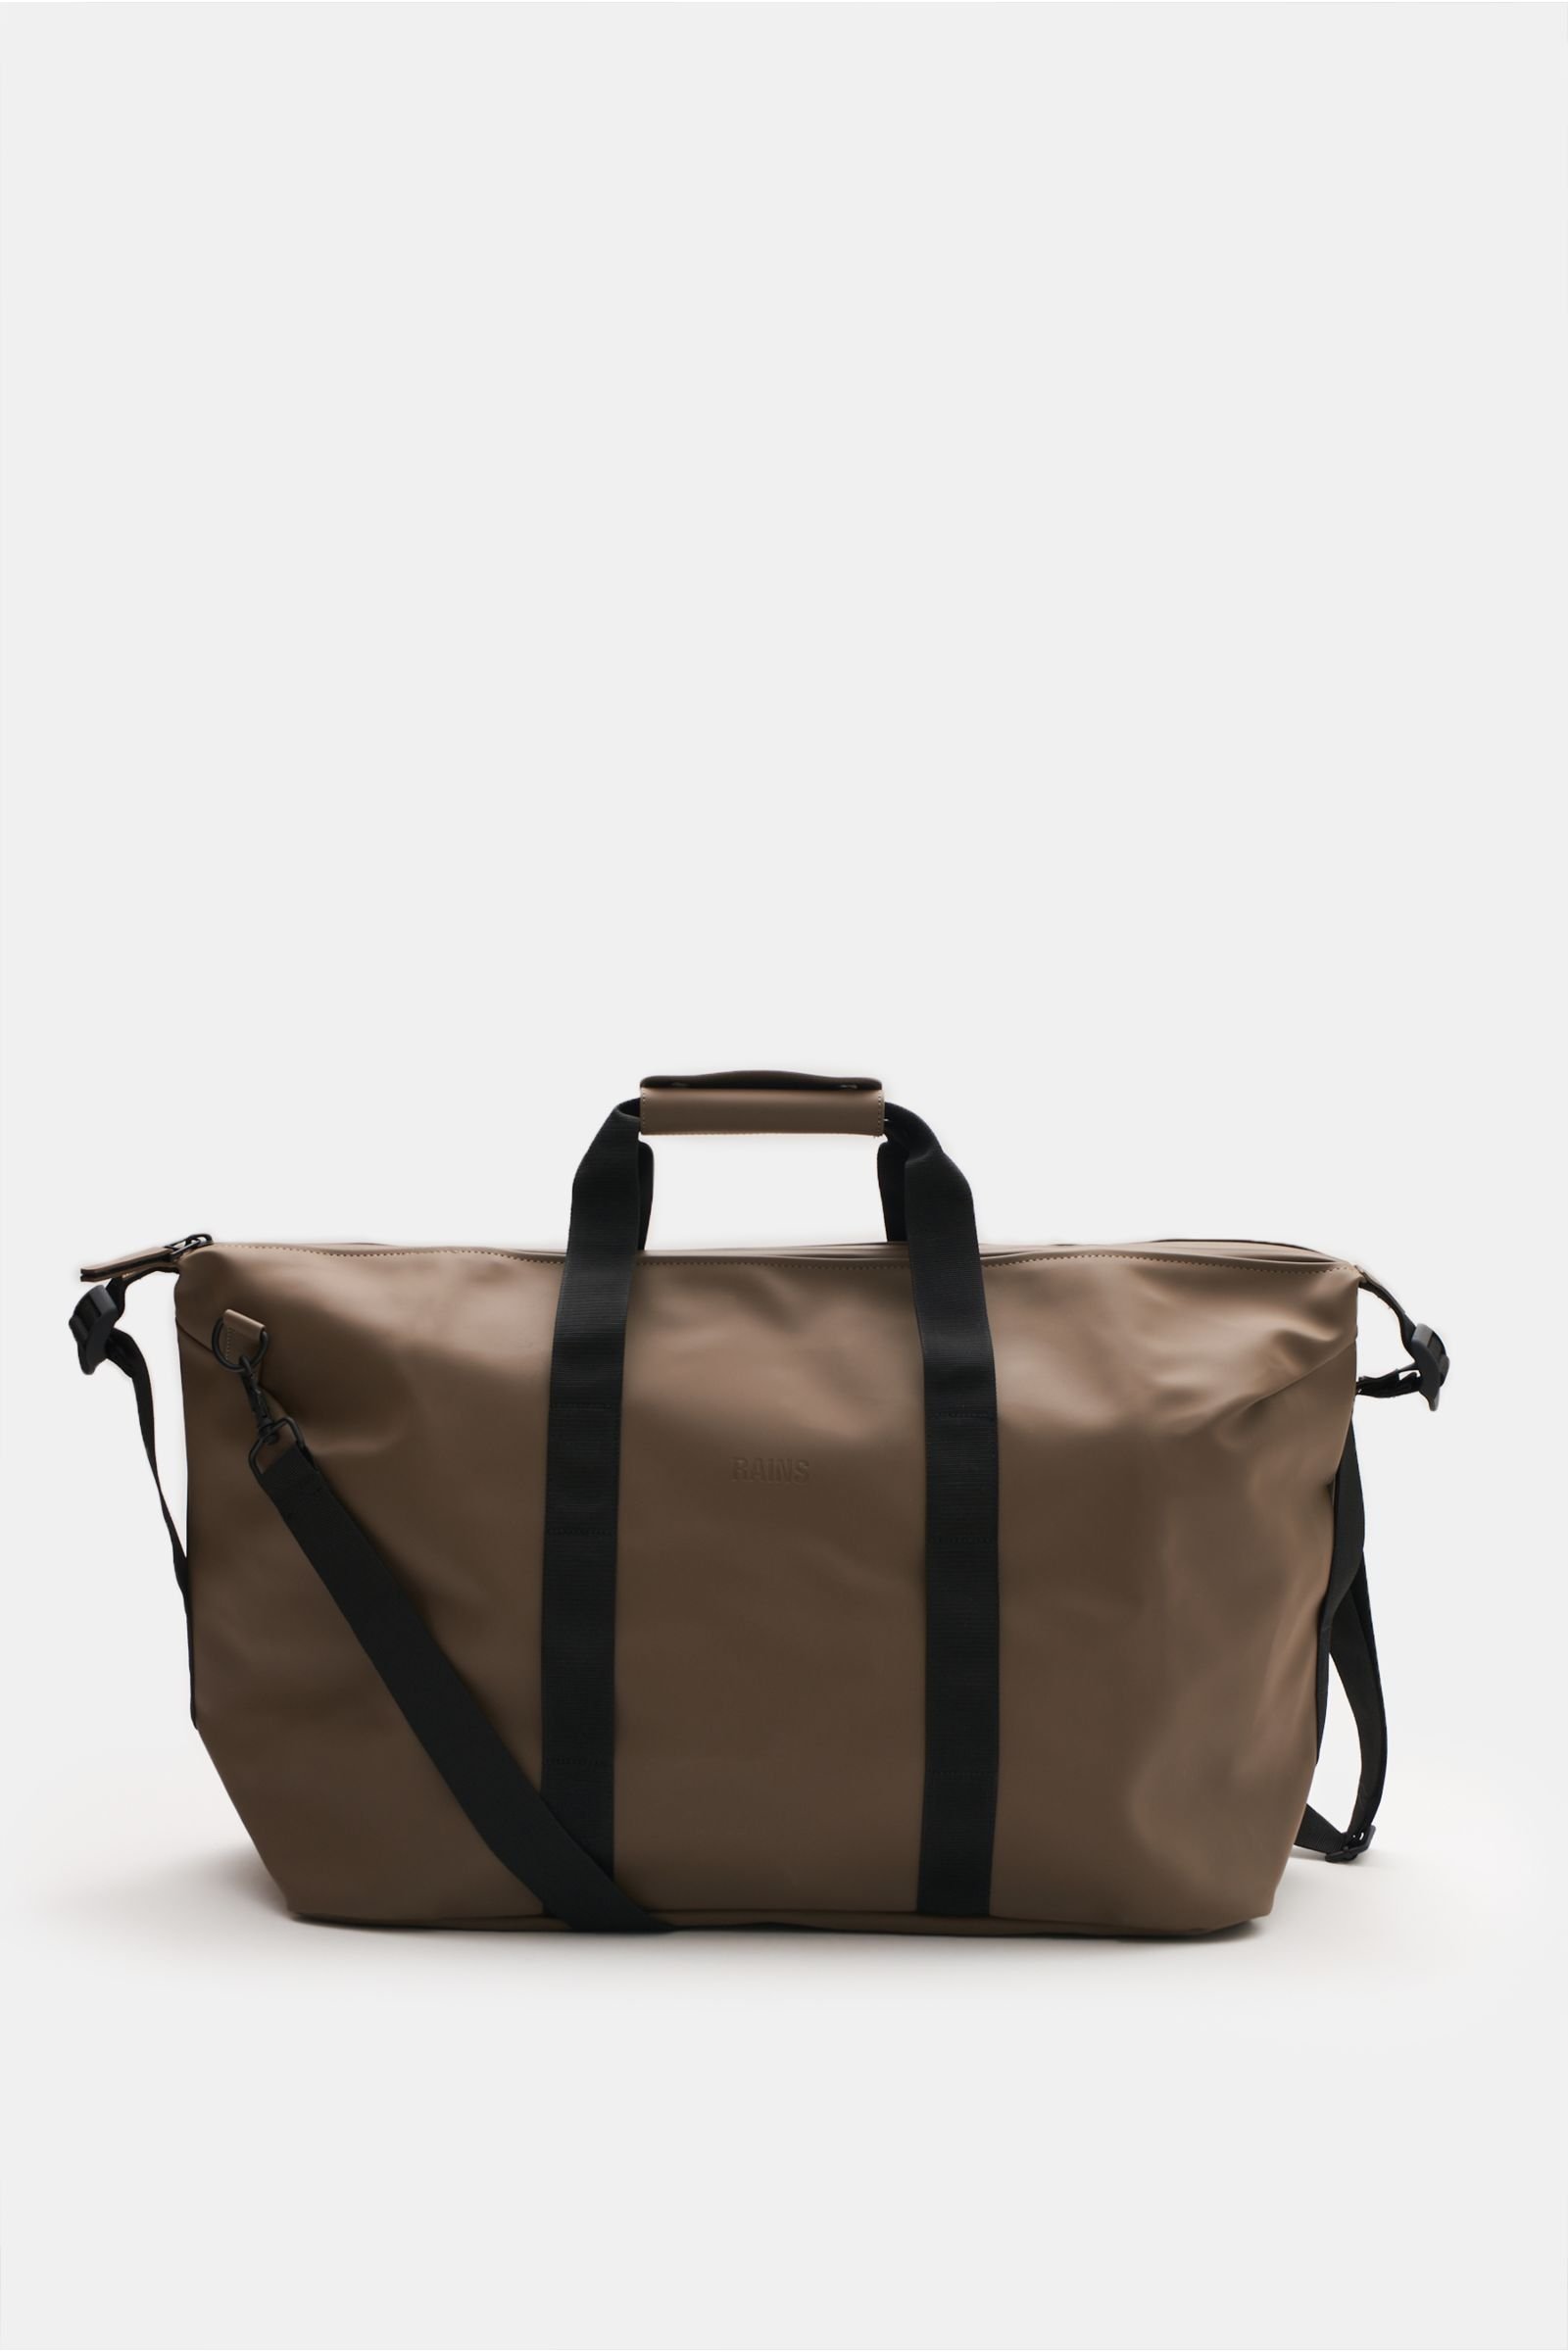 Travel bag 'Weekend Bag' brown